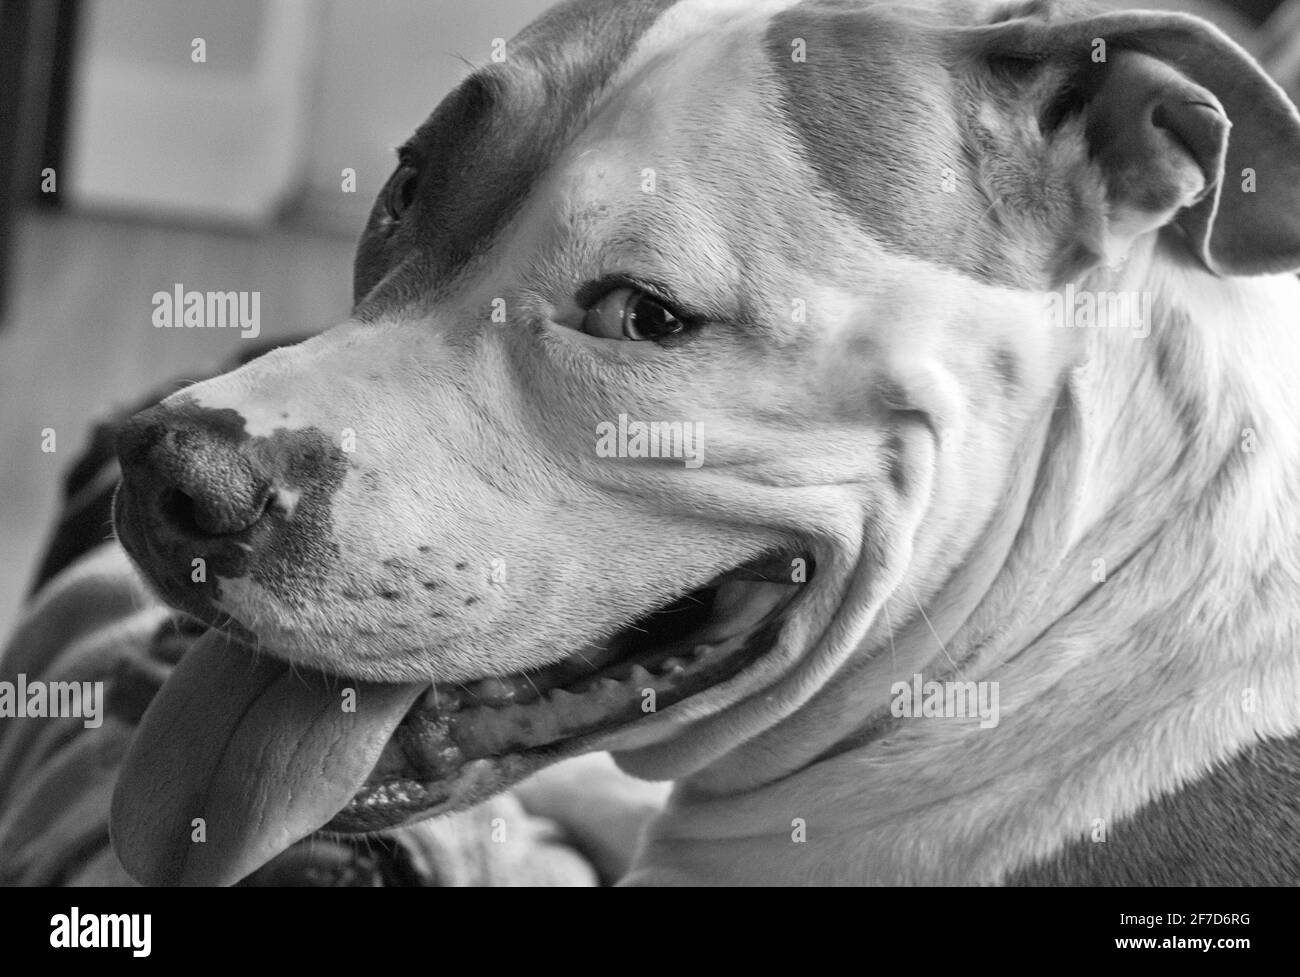 Un chien mixte (American Staffordshire Pit Bull Terrier et American Pit Bull Terrier) (Canis lupus familiaris) semble heureux, souriant Banque D'Images